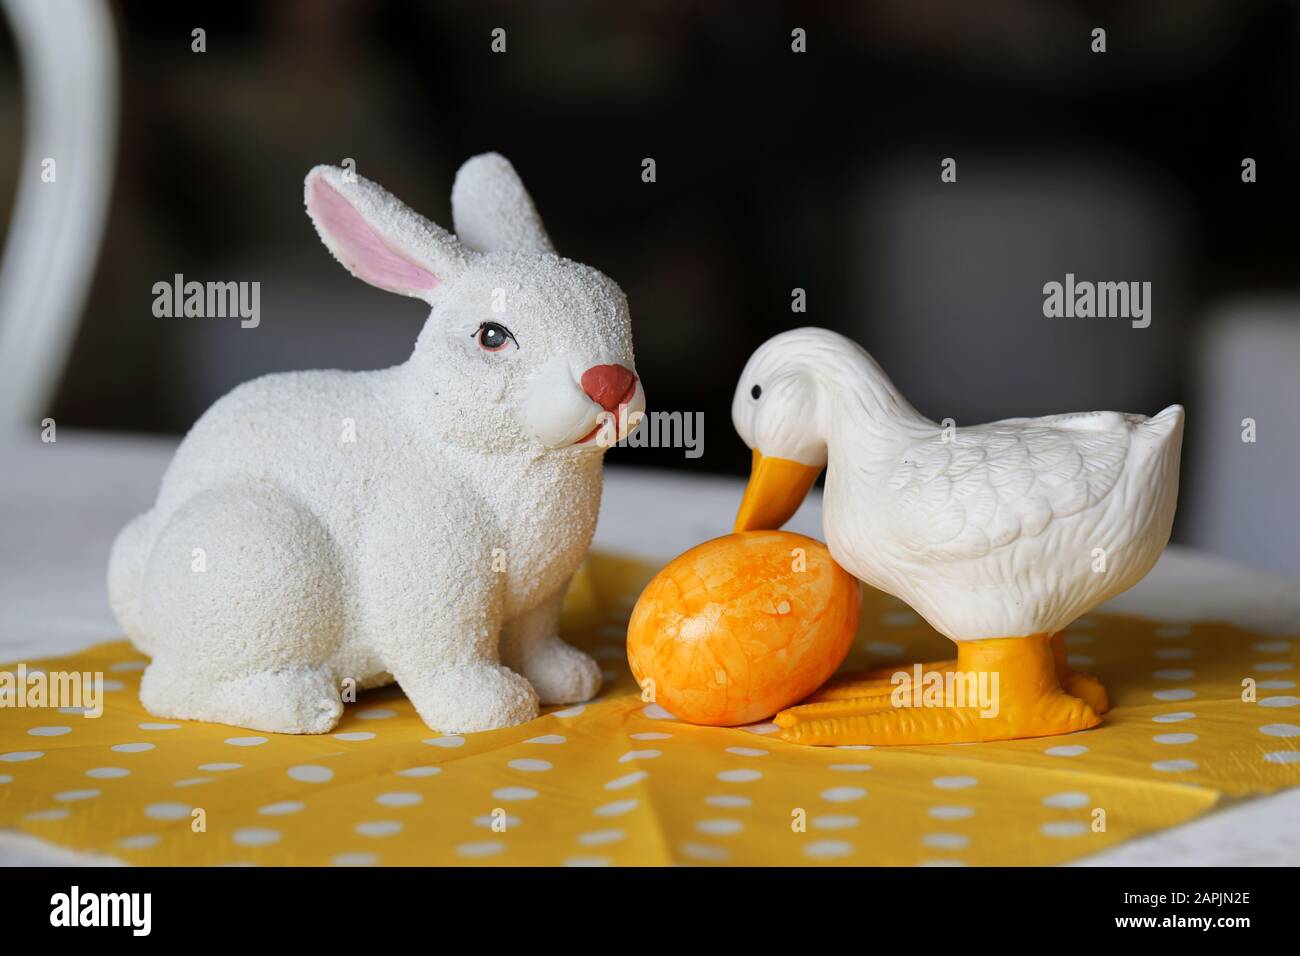 Colorate decorazioni pasquali su un tavolo. Immagine a colori closeup di una ceramica bianca coniglietto di Pasqua e anatra figure e colorate uova di Pasqua dipinte. Foto Stock